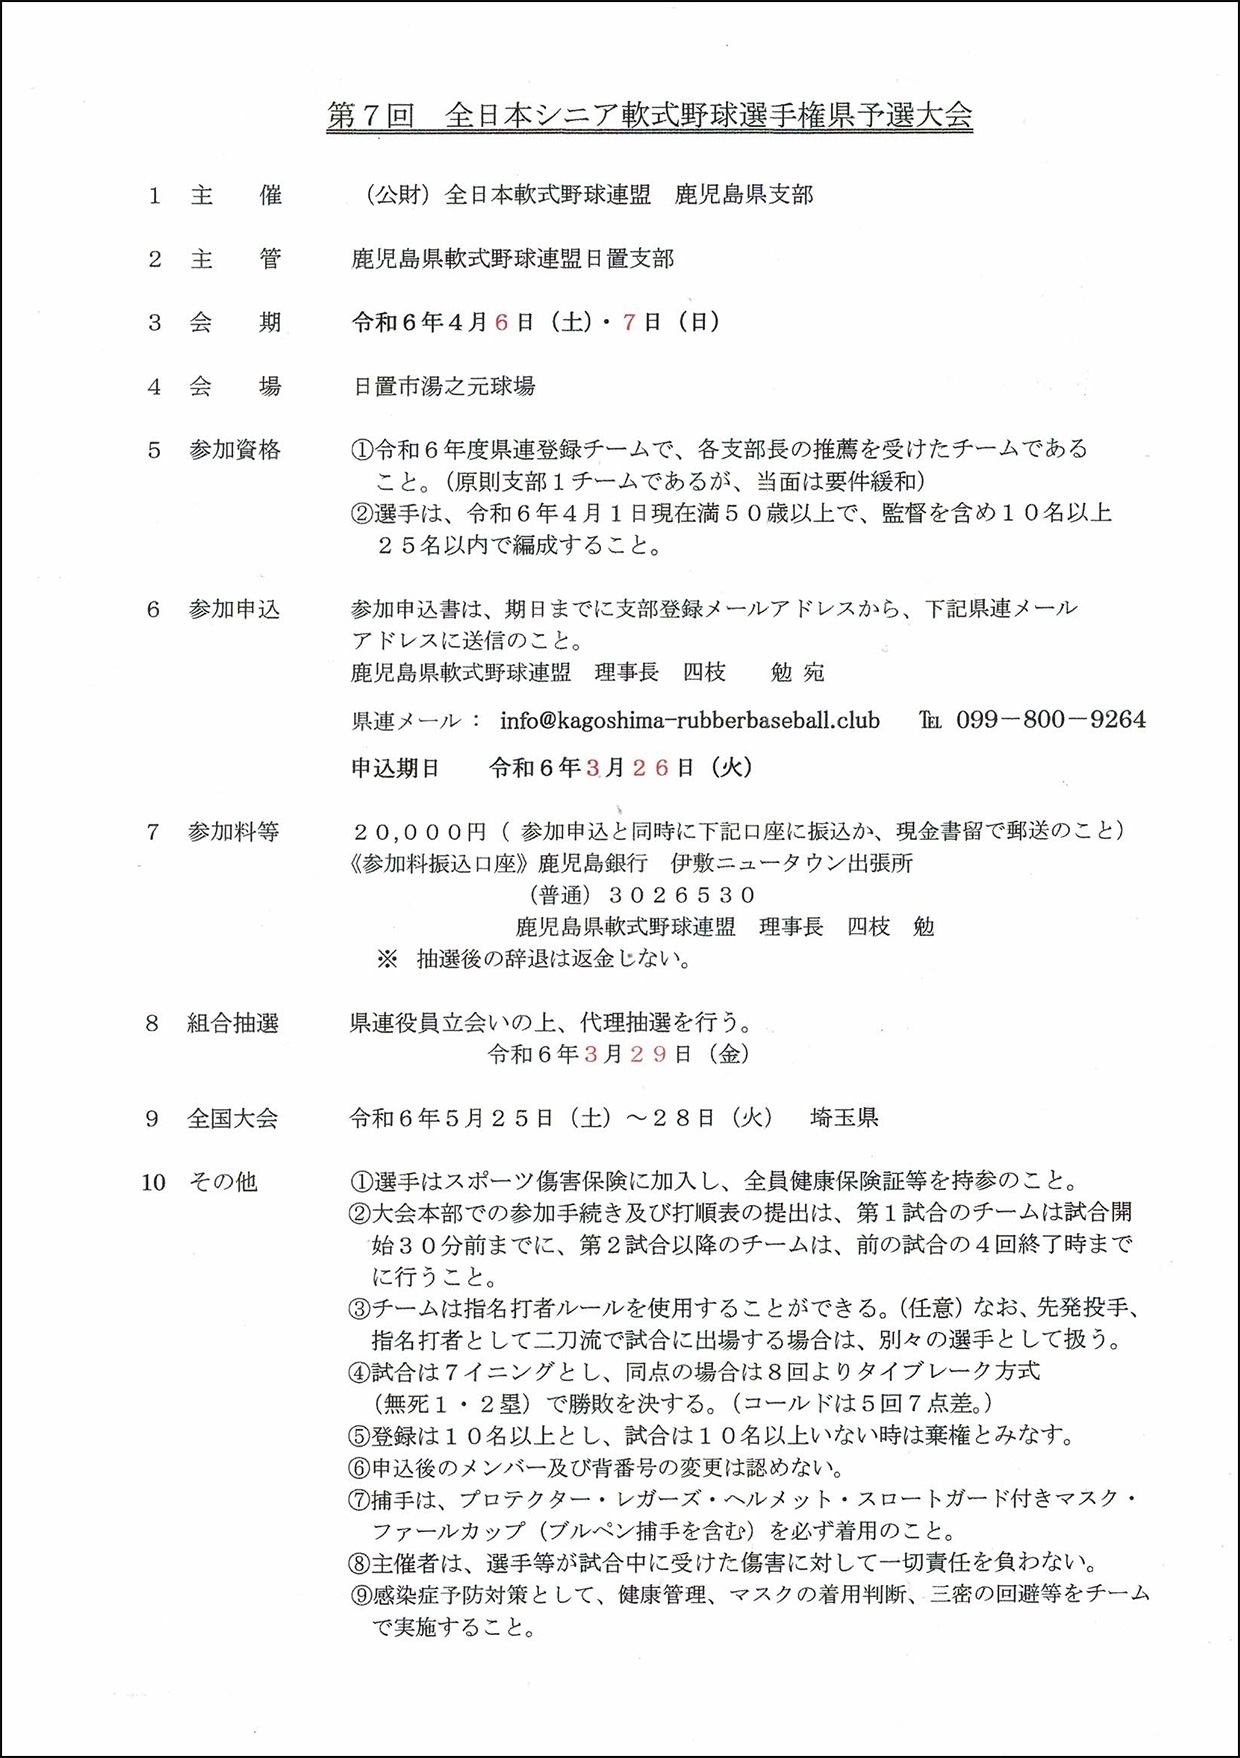 【修正】第7回全日本シニア軟式野球県予選実施要項